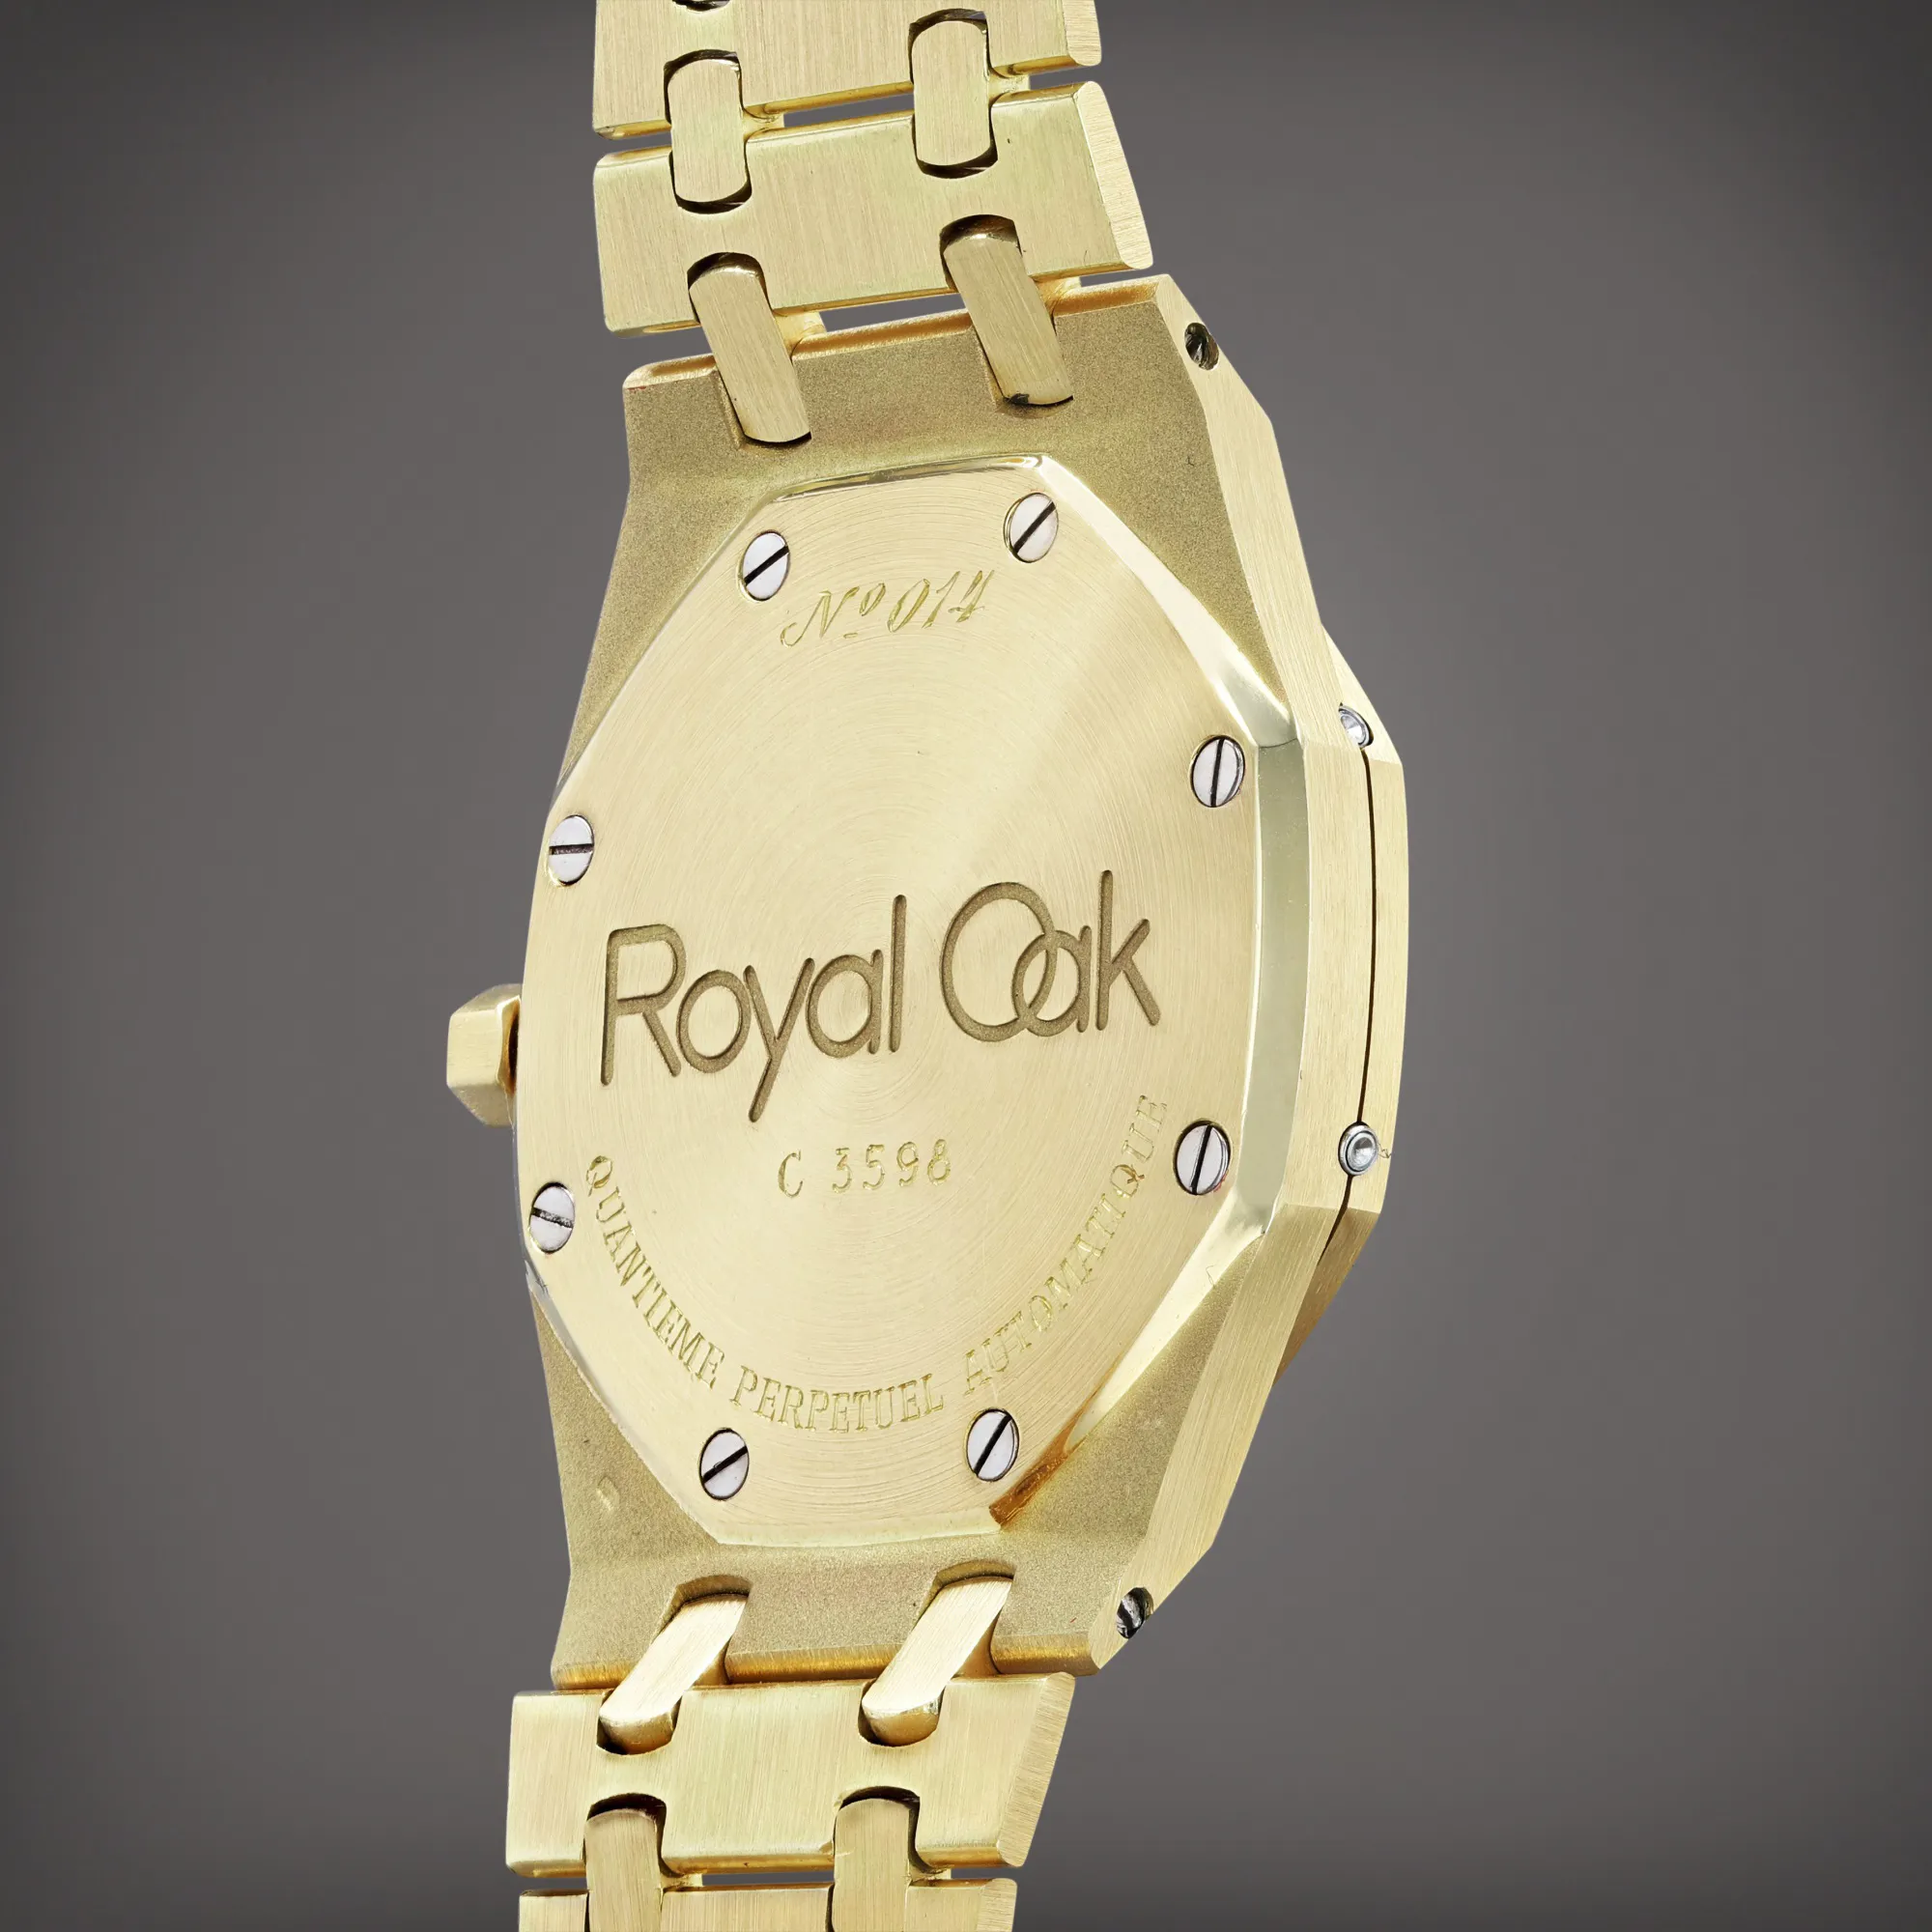 Audemars Piguet Royal Oak Perpetual Calendar 25554 39mm Yellow gold Gilt 2